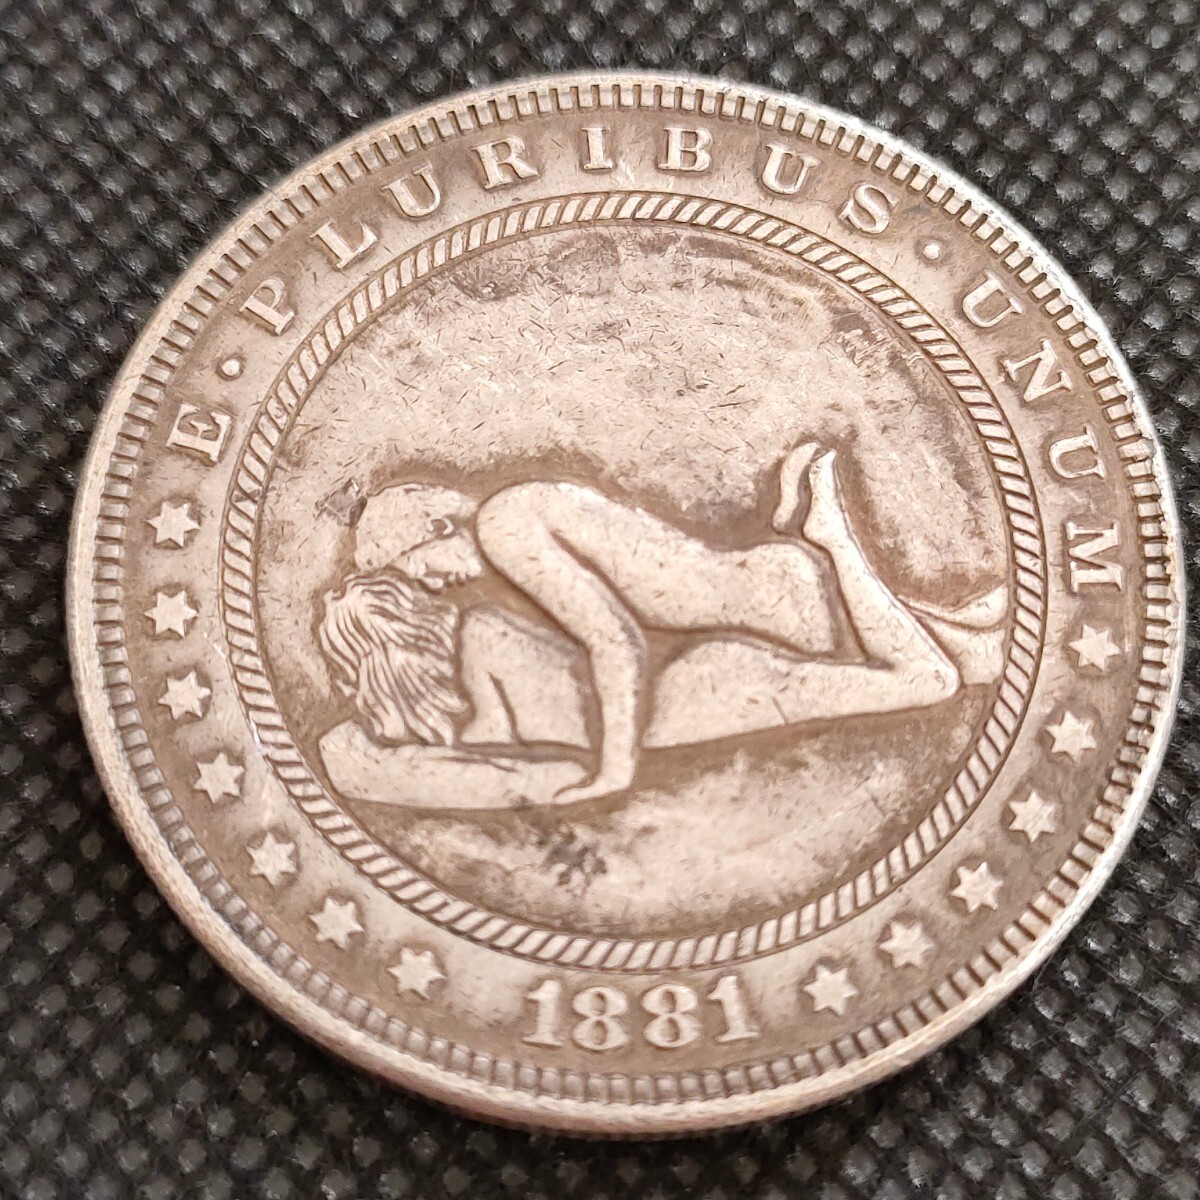 4141 アメリカ古銭 ルンペン 約38mm イーグル チャレンジコイン コイン アンティーク ホーボーの画像1